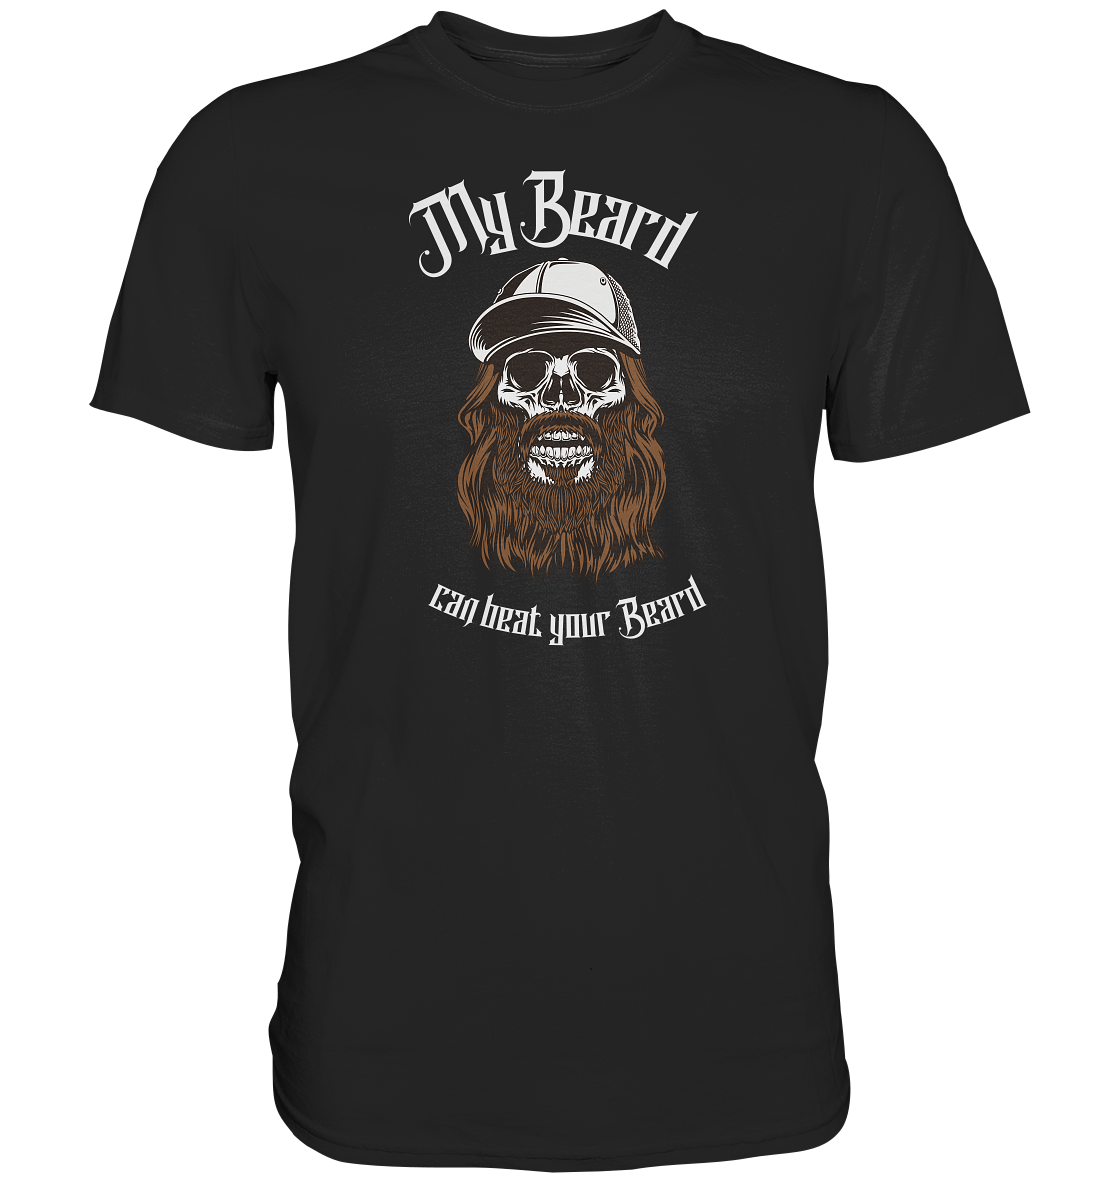 "My Beard can beat your Beard" - Premium Shirt